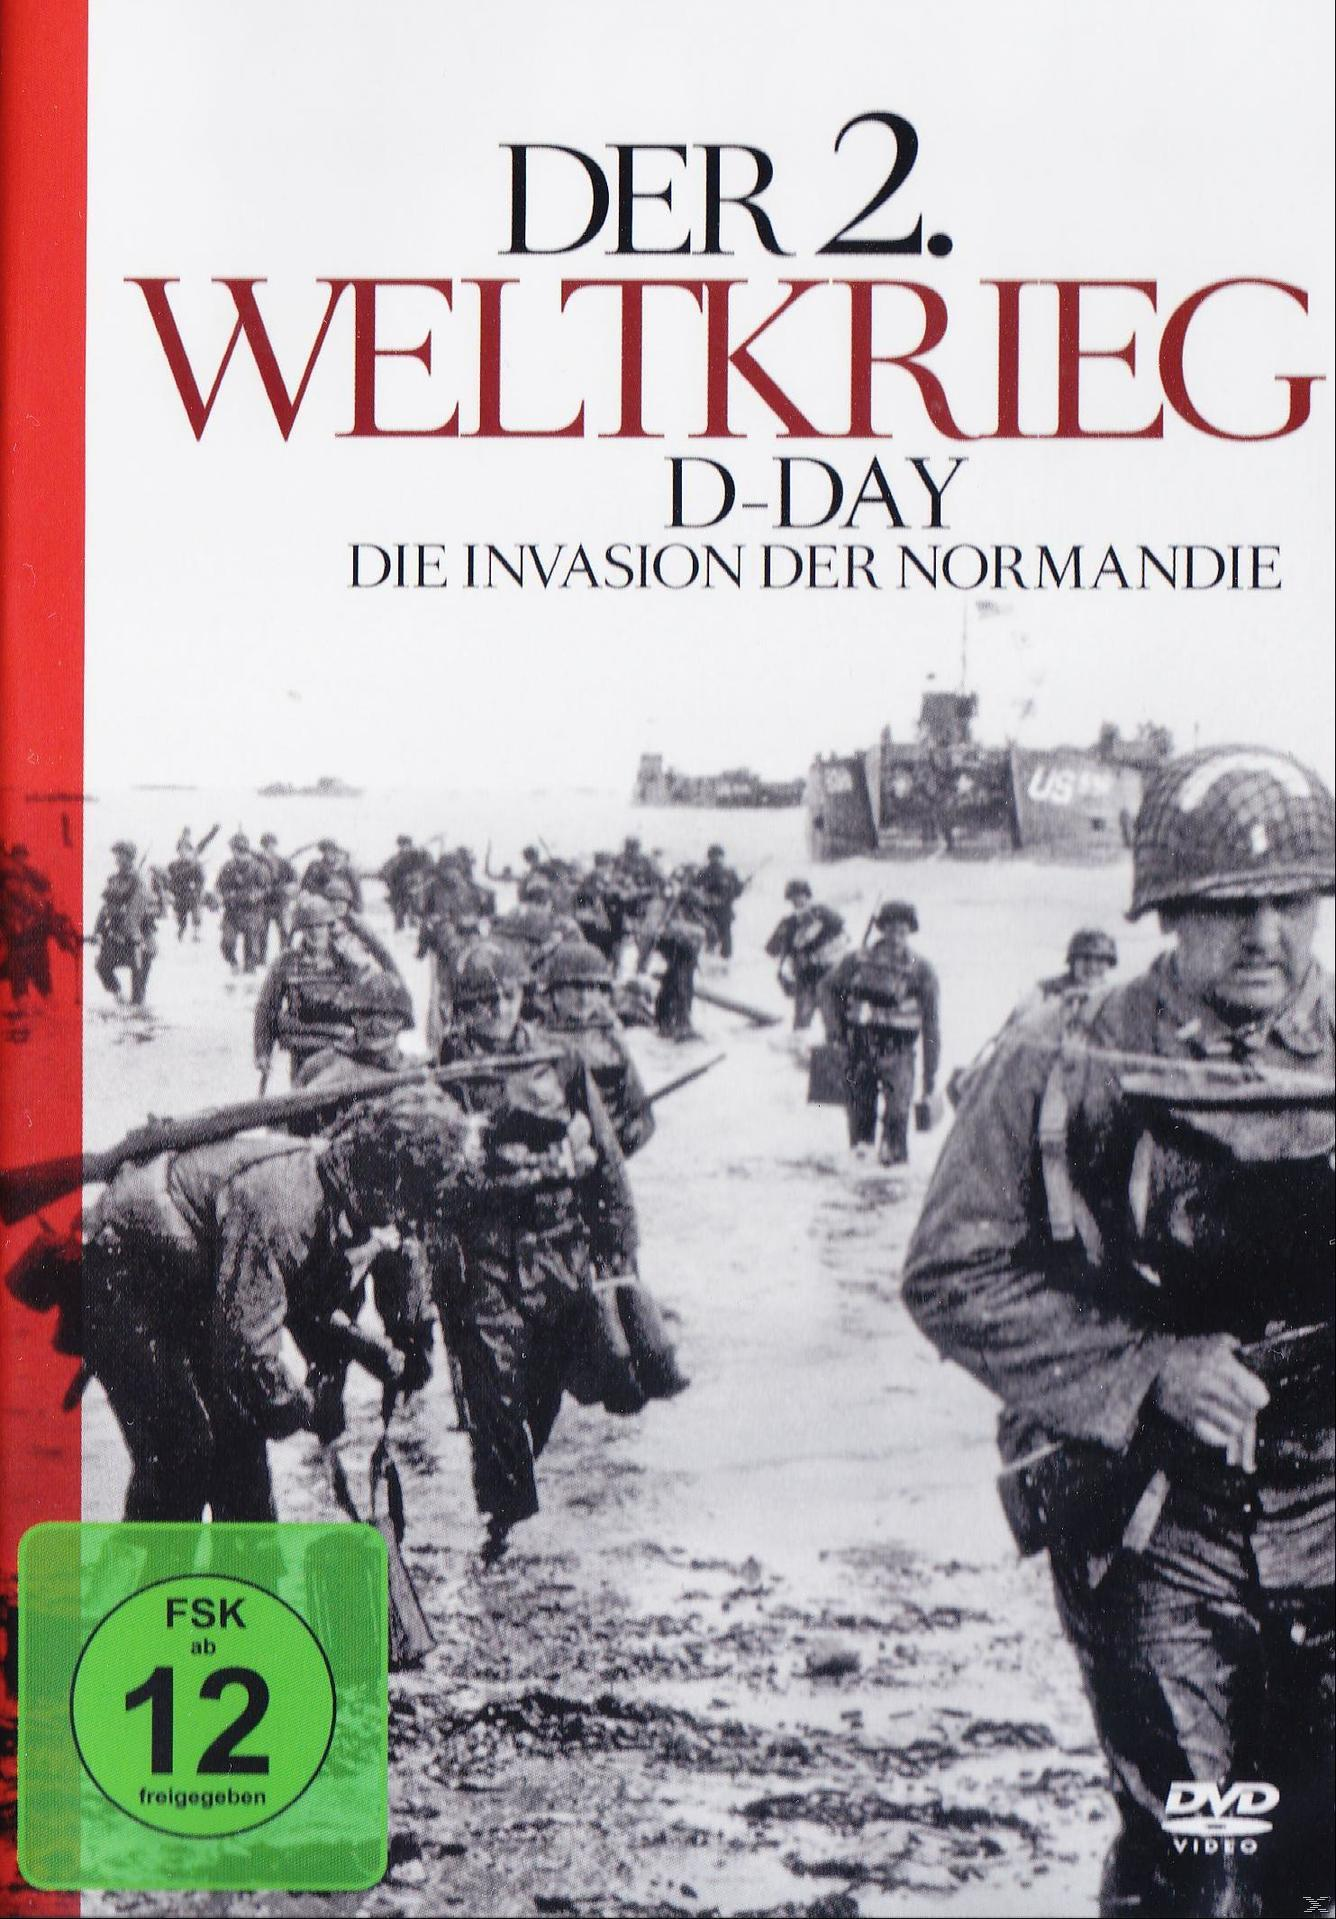 DVD Invasion der 2.Weltkrieg-d-Day-die Normandie Der